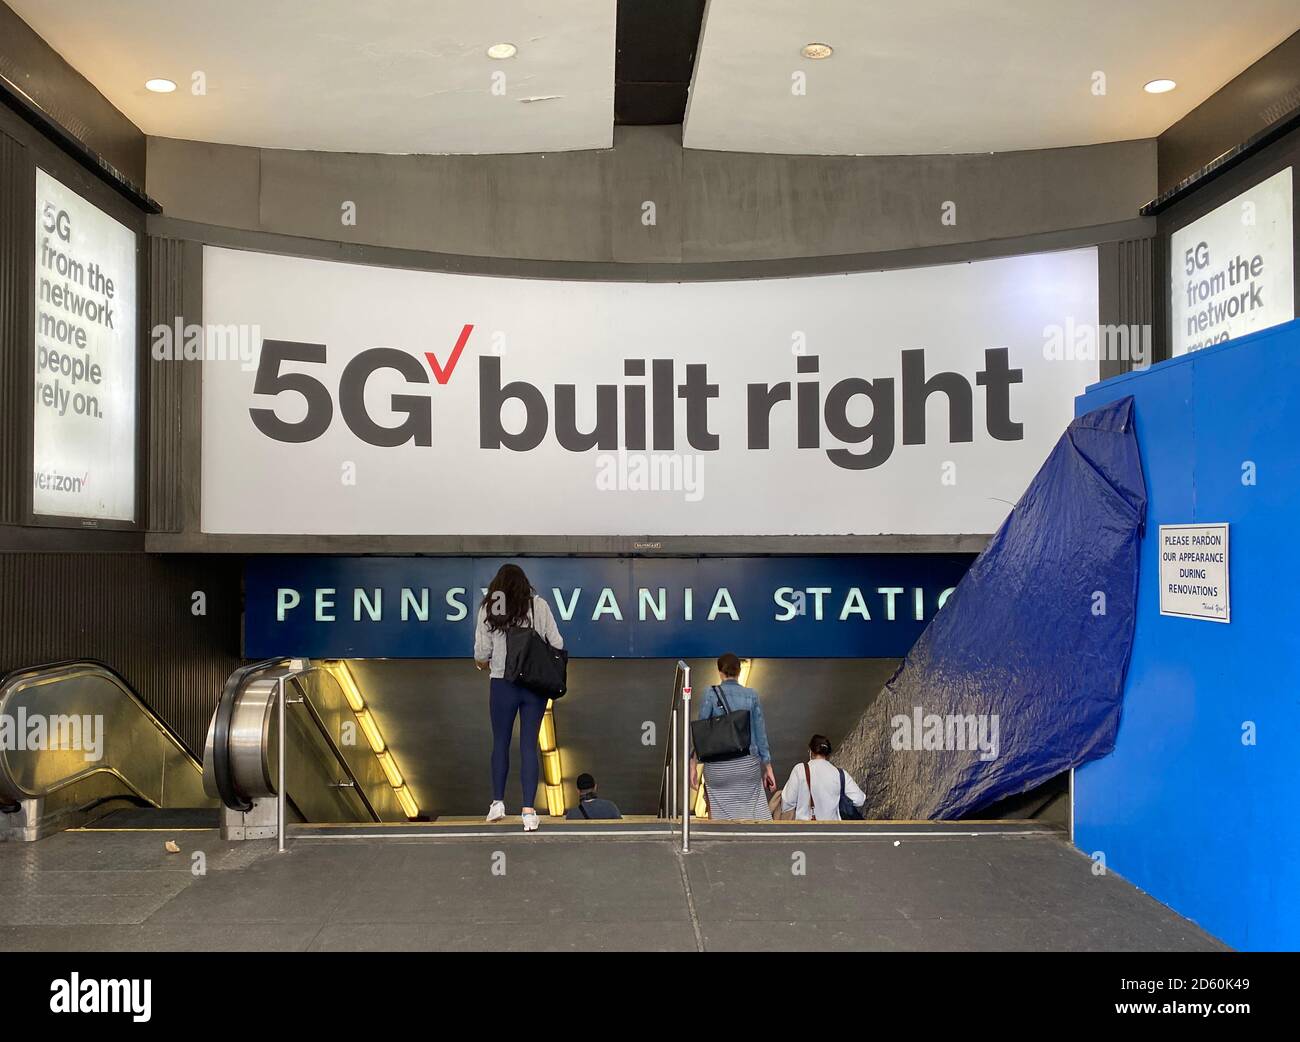 Aziende che spingono le reti 5G di nuova generazione. Pubblicità all'ingresso della Penn Station a New York City. Foto Stock